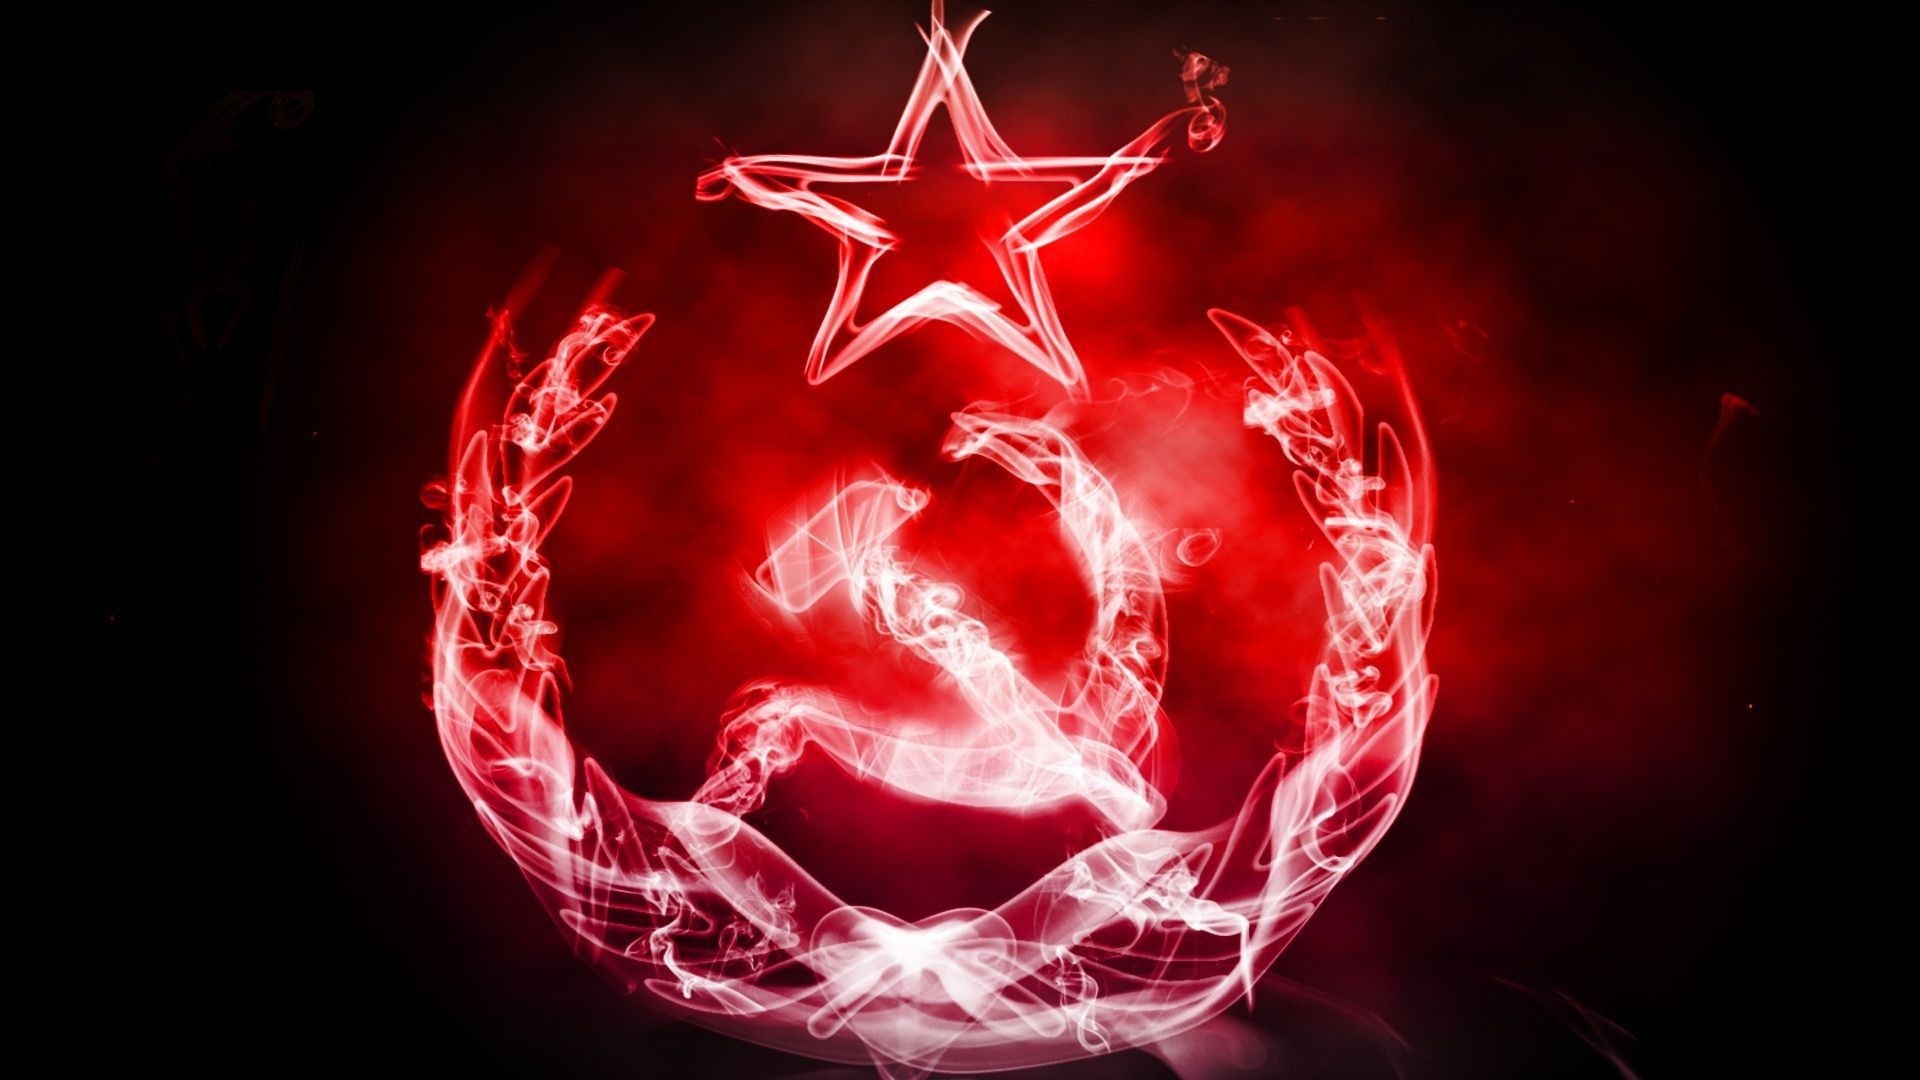 Communist Wallpaper Free Communist Background